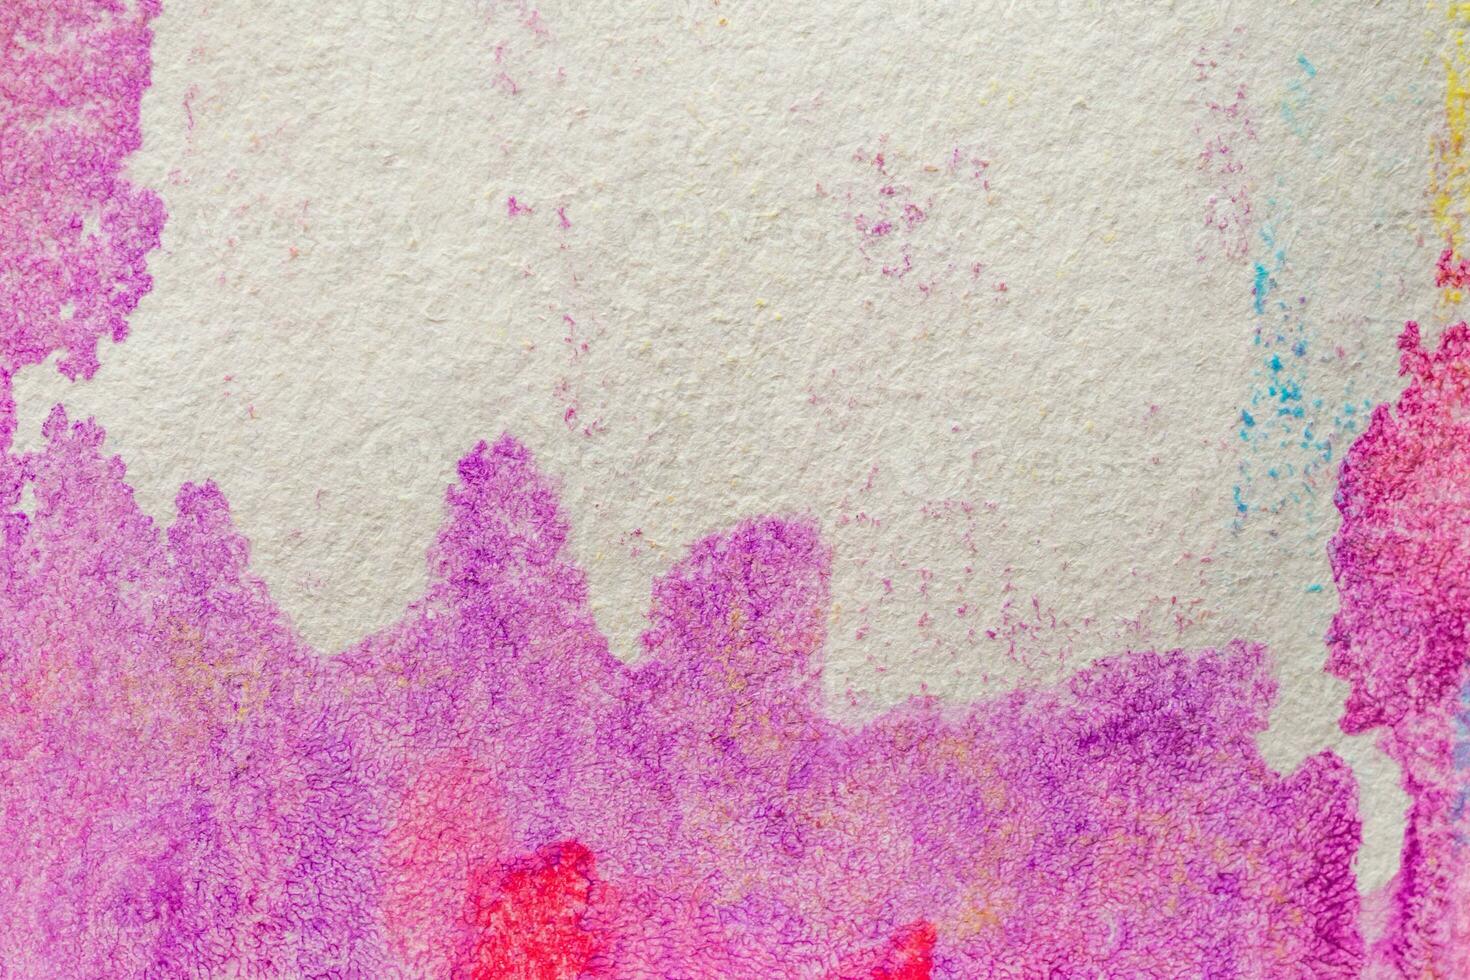 textura de fundo de papel de tinta aquarela rosa abstrata foto